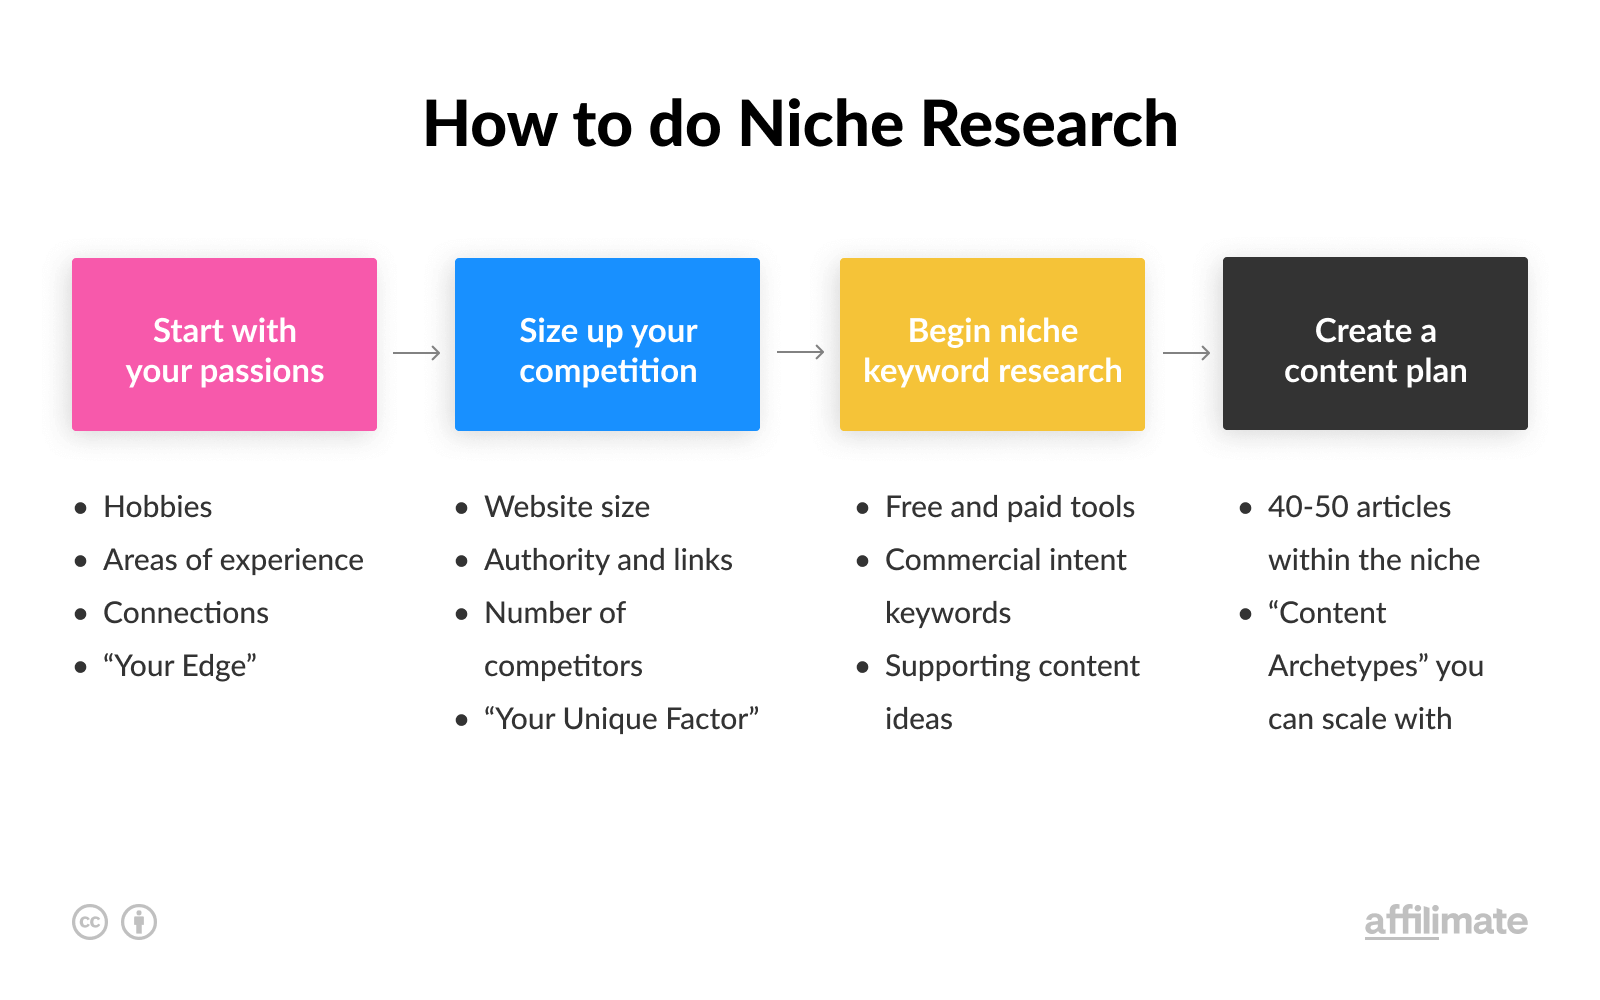 Niche Research